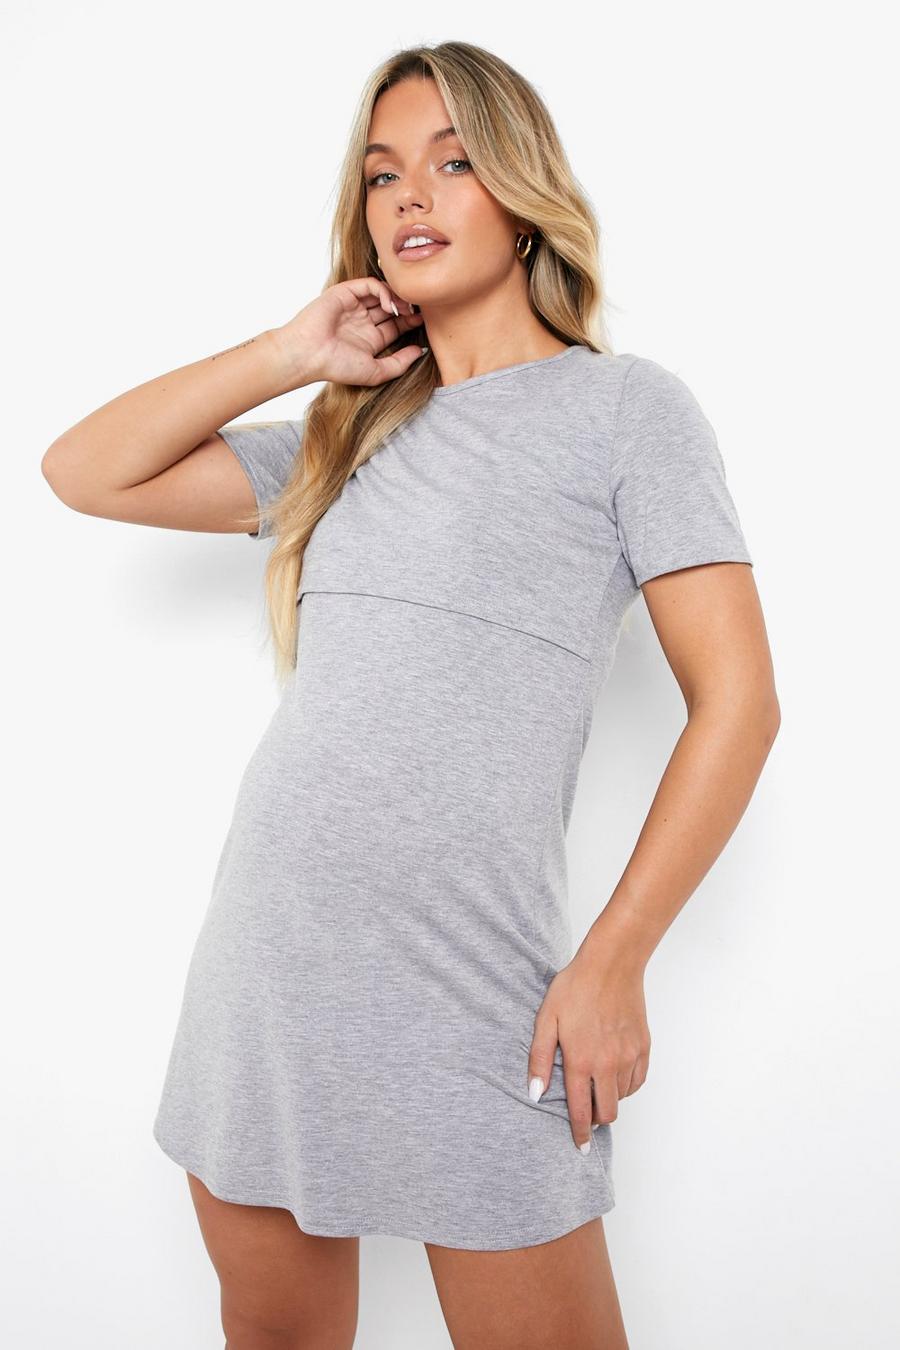 Grey marl Maternity Nursing T-shirt Nightie